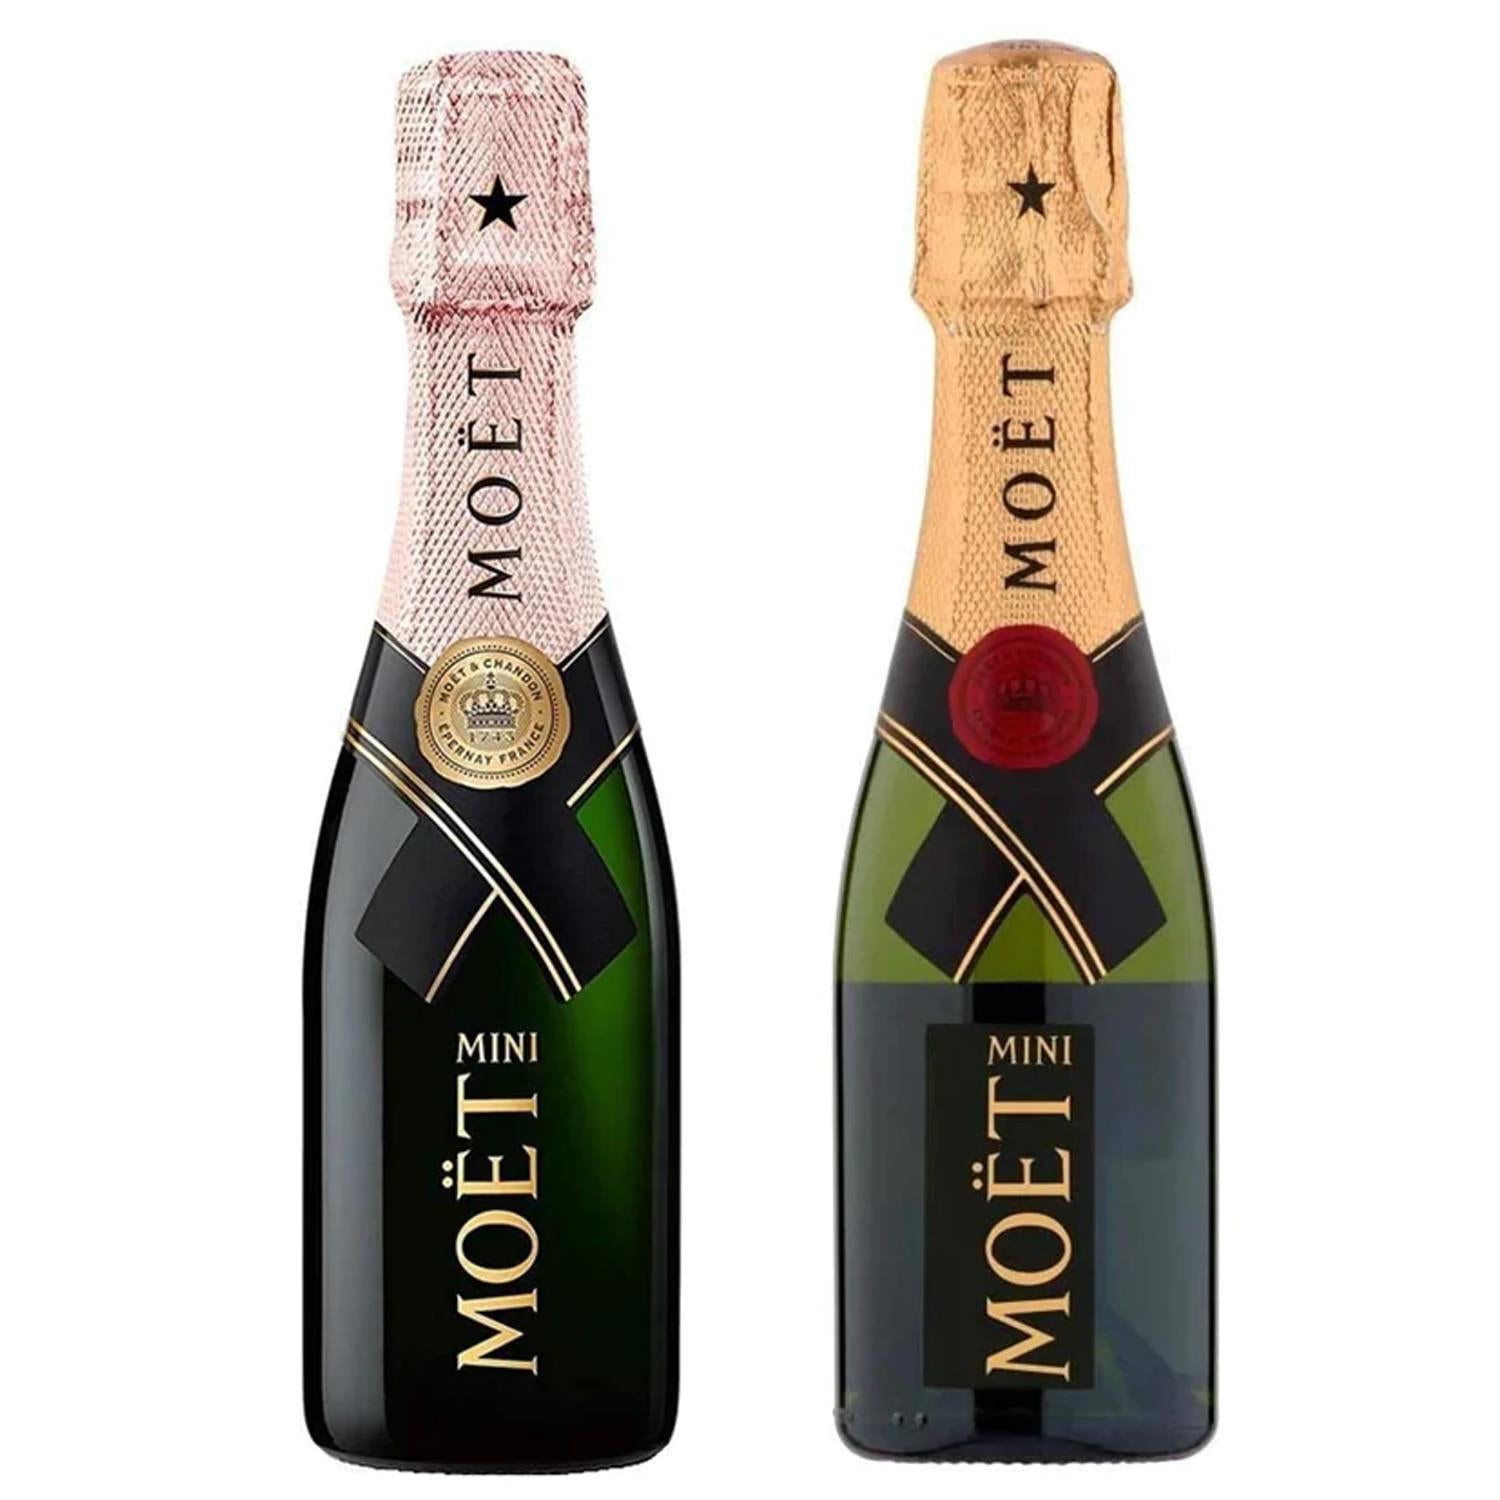 Moet & Chandon Brut Imperial NV Champagne Mini Moet Online